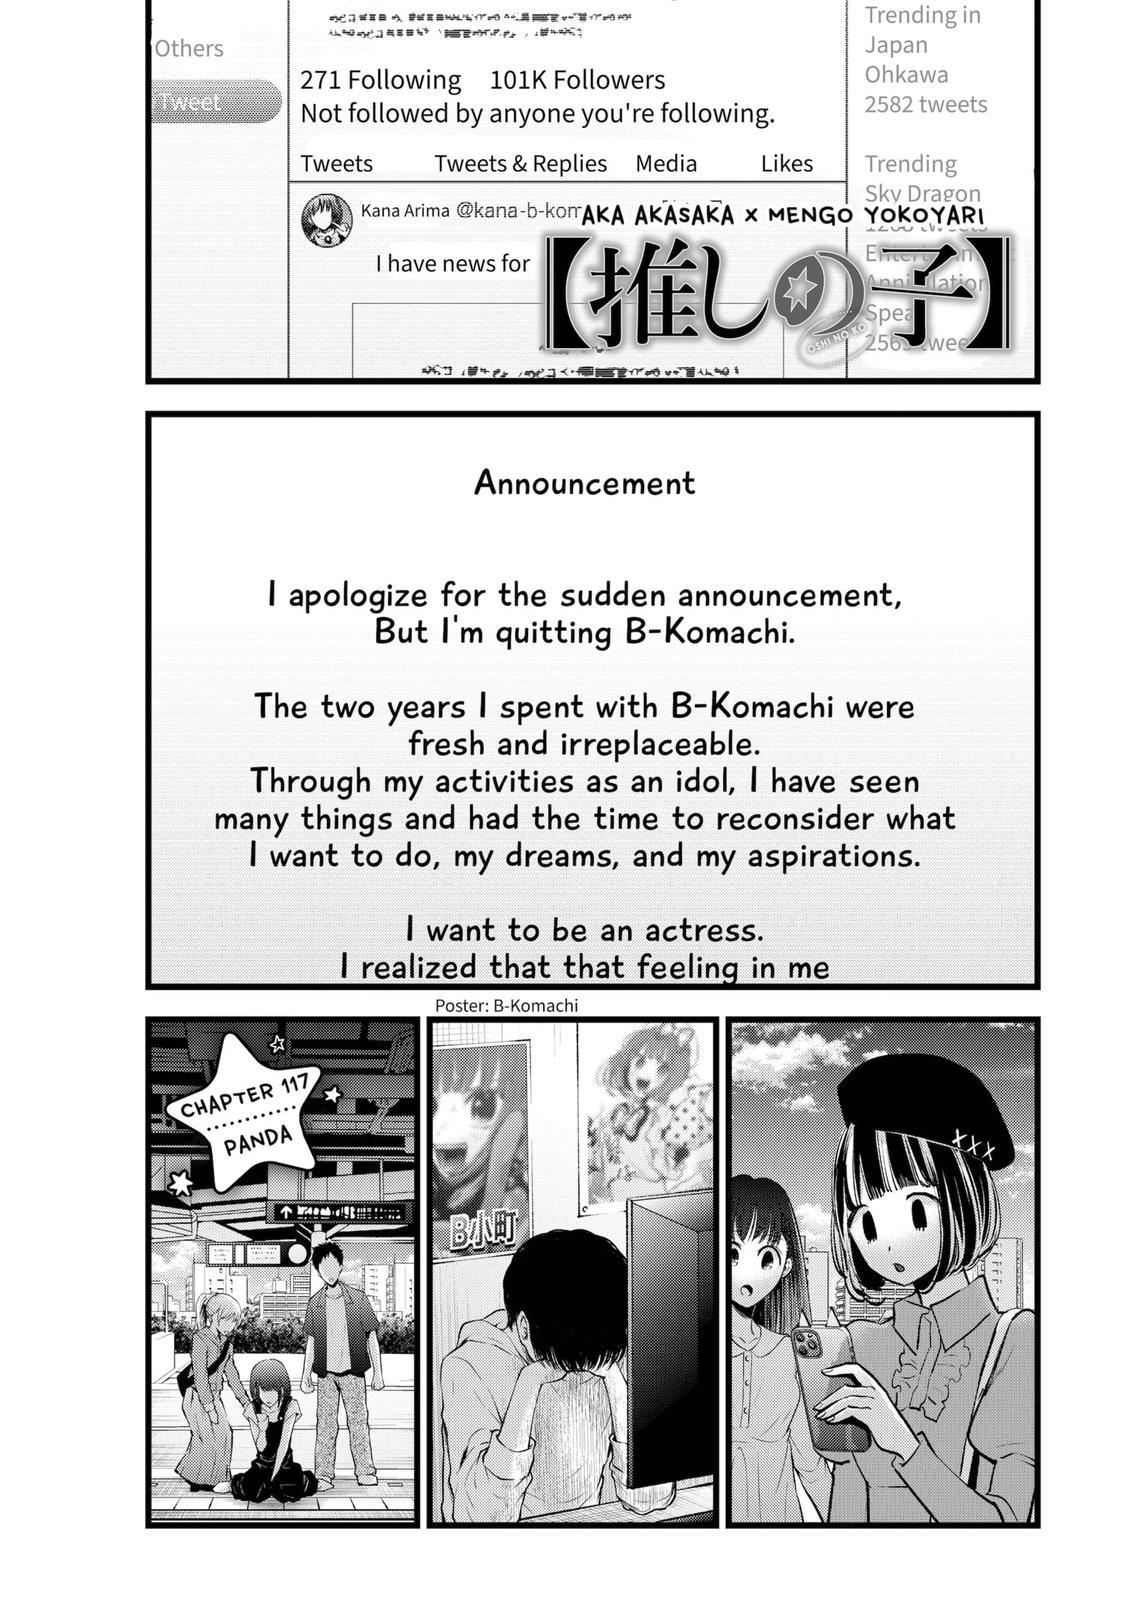 Oshi no Ko, Chapter 99 - Oshi no Ko Manga Online